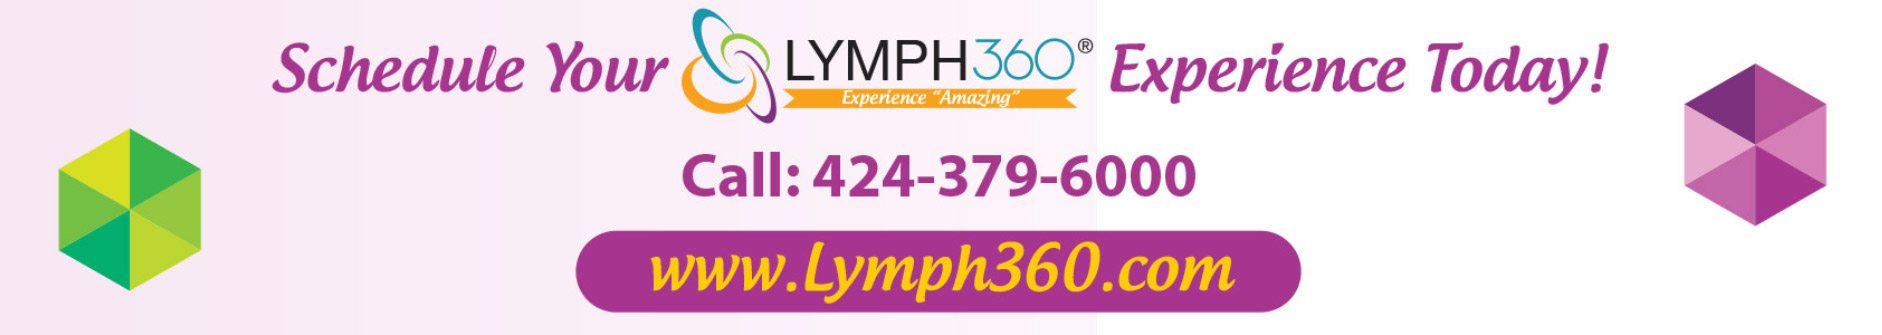 Lymph360